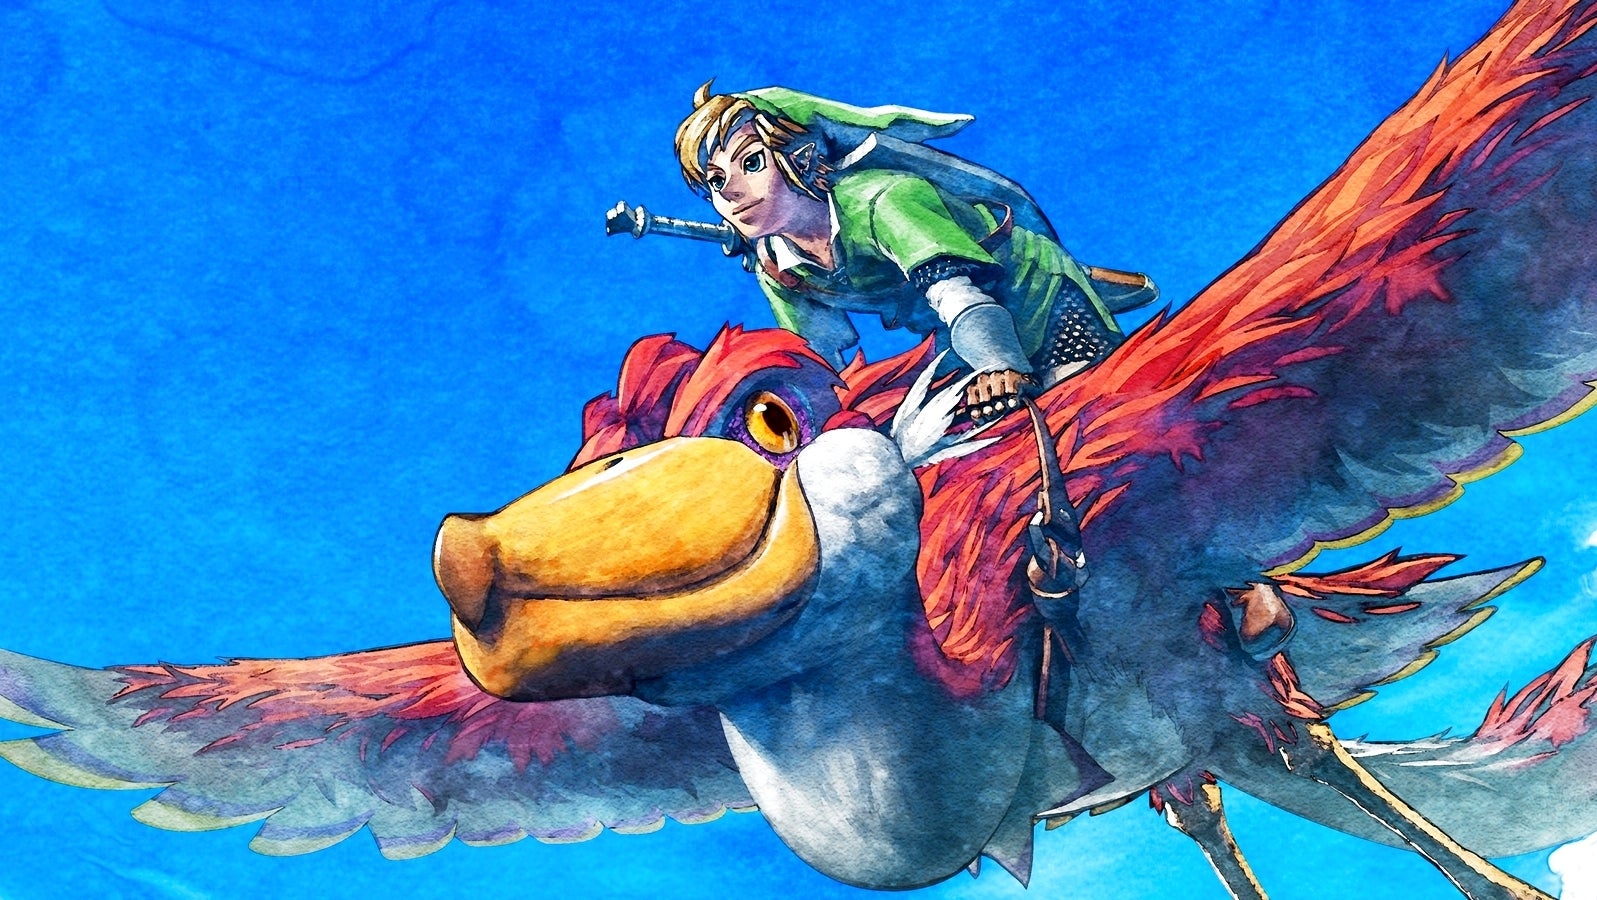 Bilder zu Zelda: Skyward Sword für Switch bei Amazon aufgetaucht